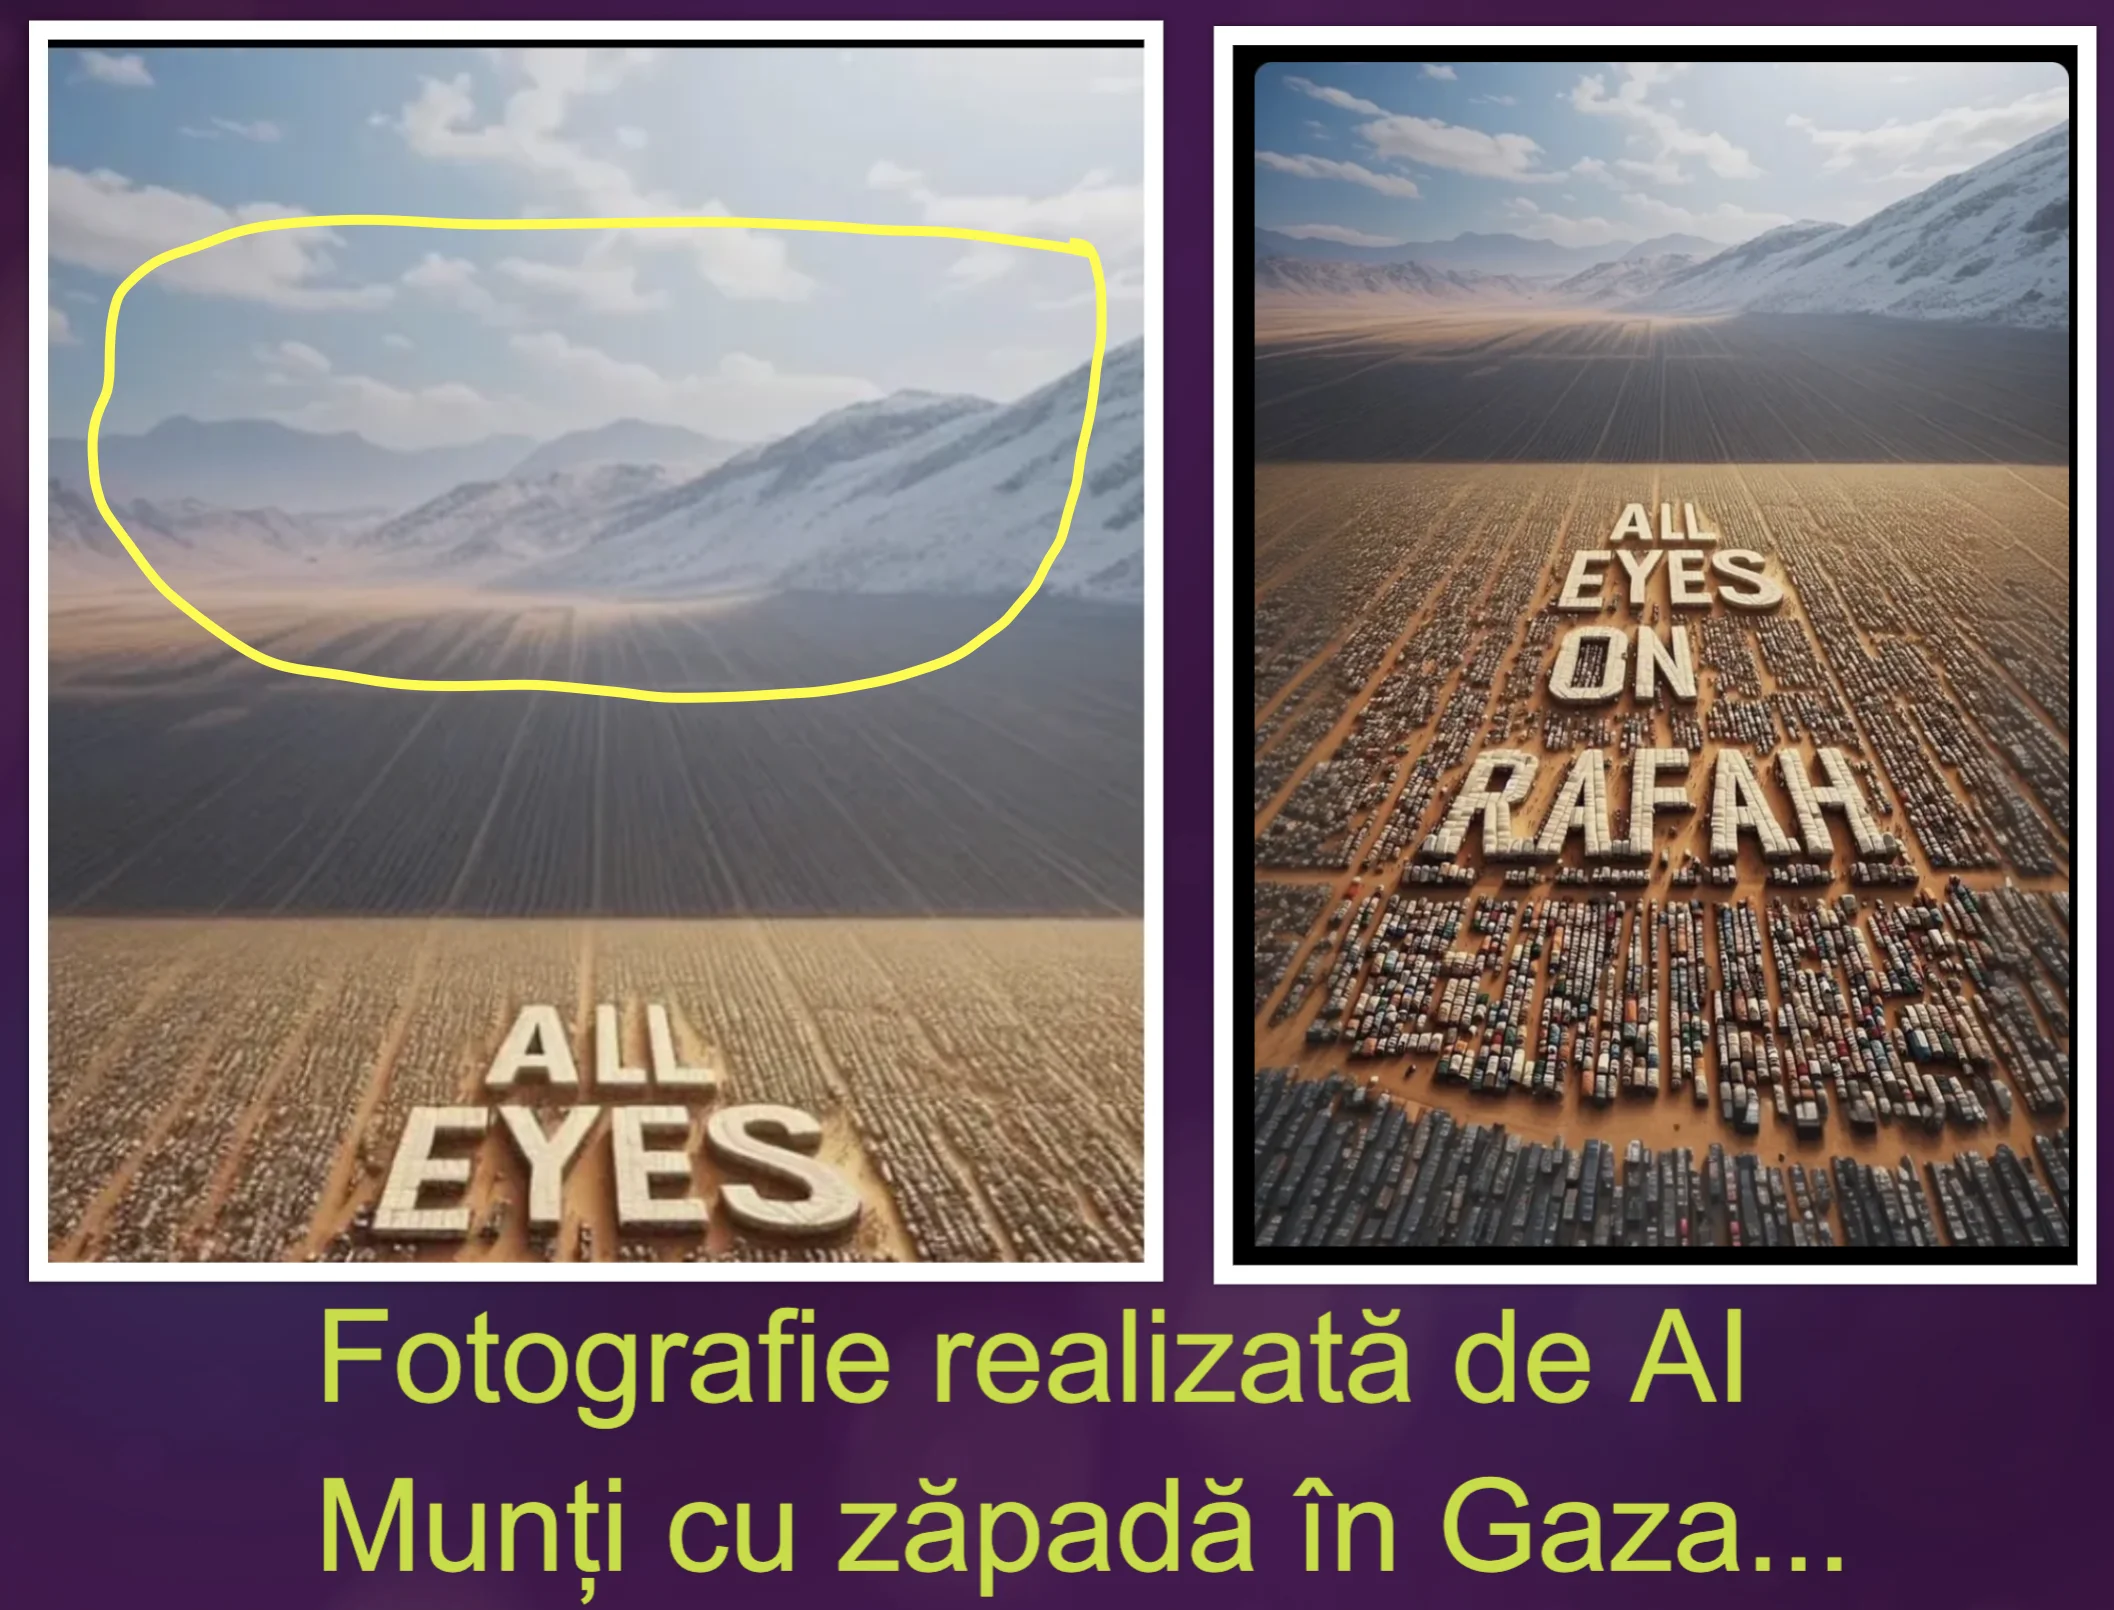 All Eyes on Rafah, fotografie falsă, realizată de AI. Milioane de oameni au picat în capcană